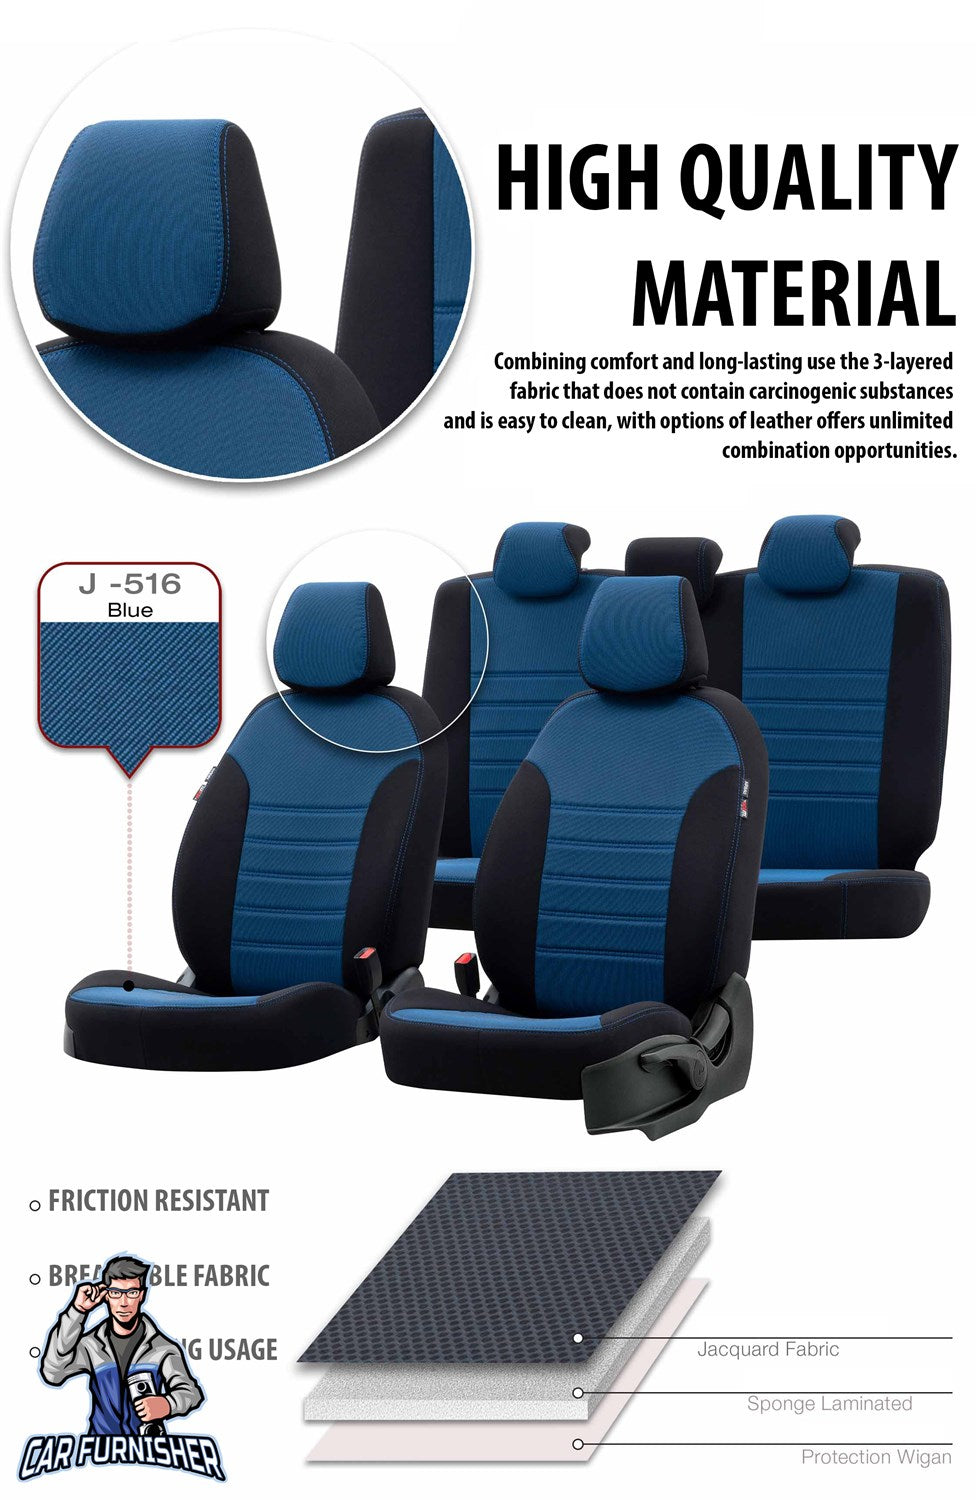 Toyota CHR Seat Cover Original Jacquard Design Gray Jacquard Fabric